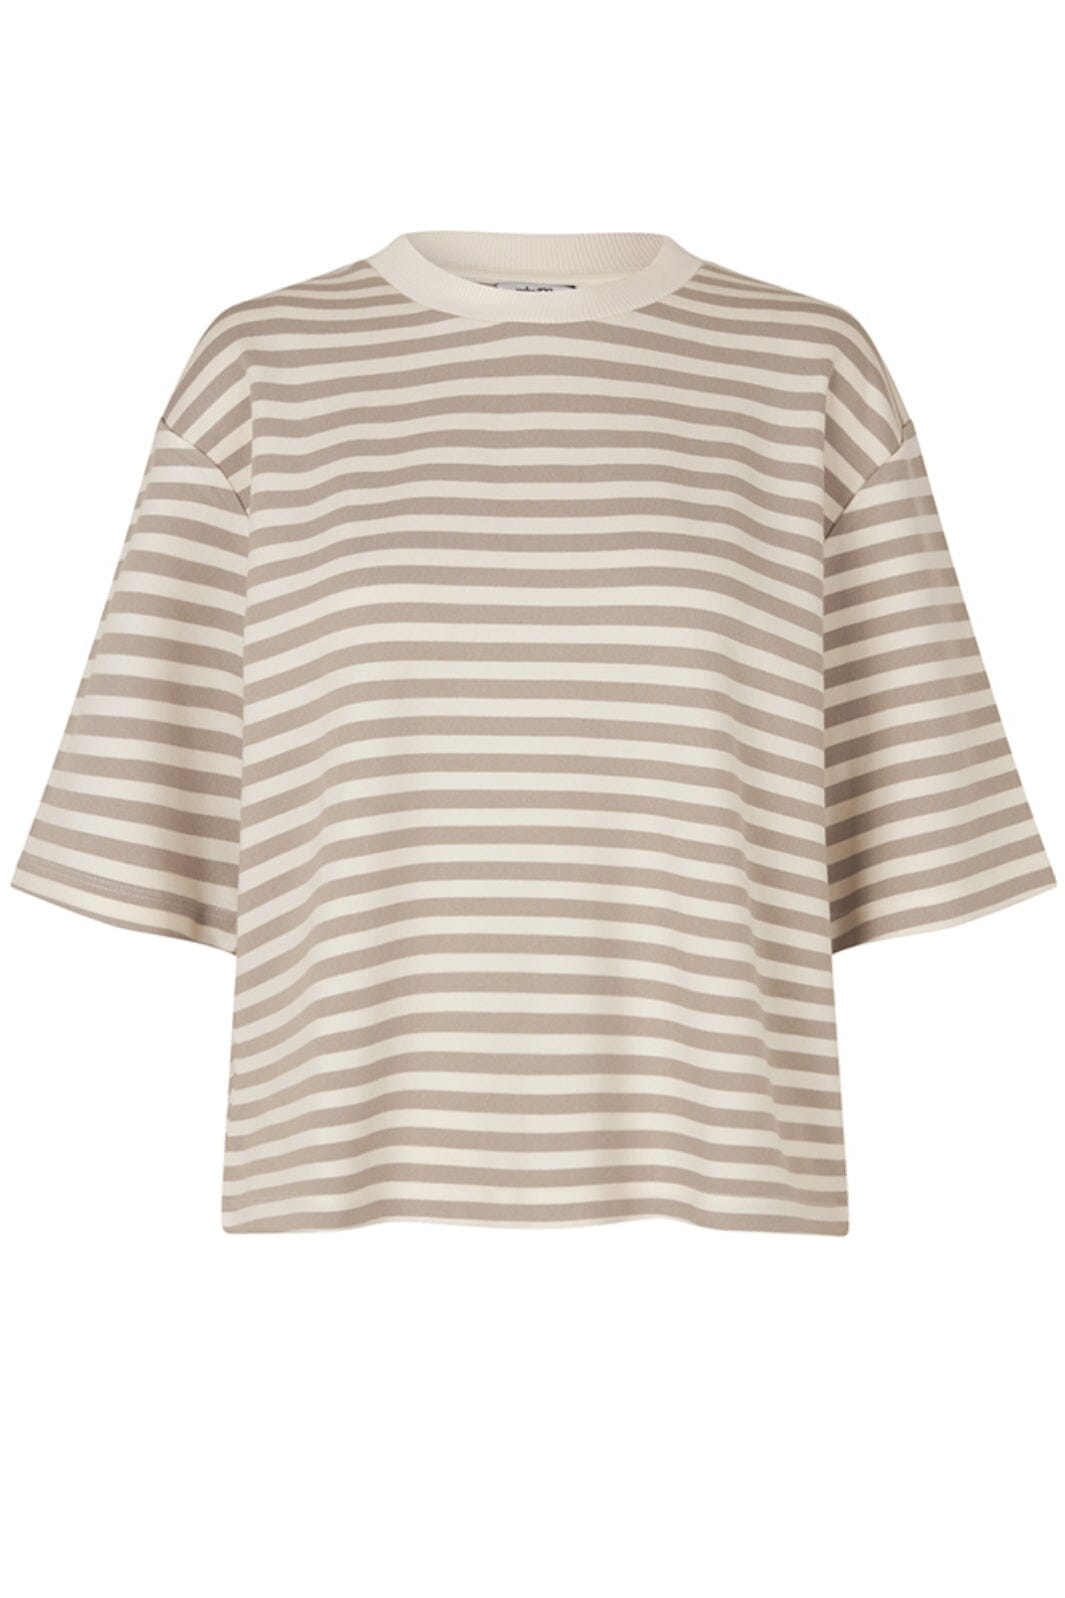 MbyM - Emrys-M - Island Fossil Sugar Stripe T-shirts 